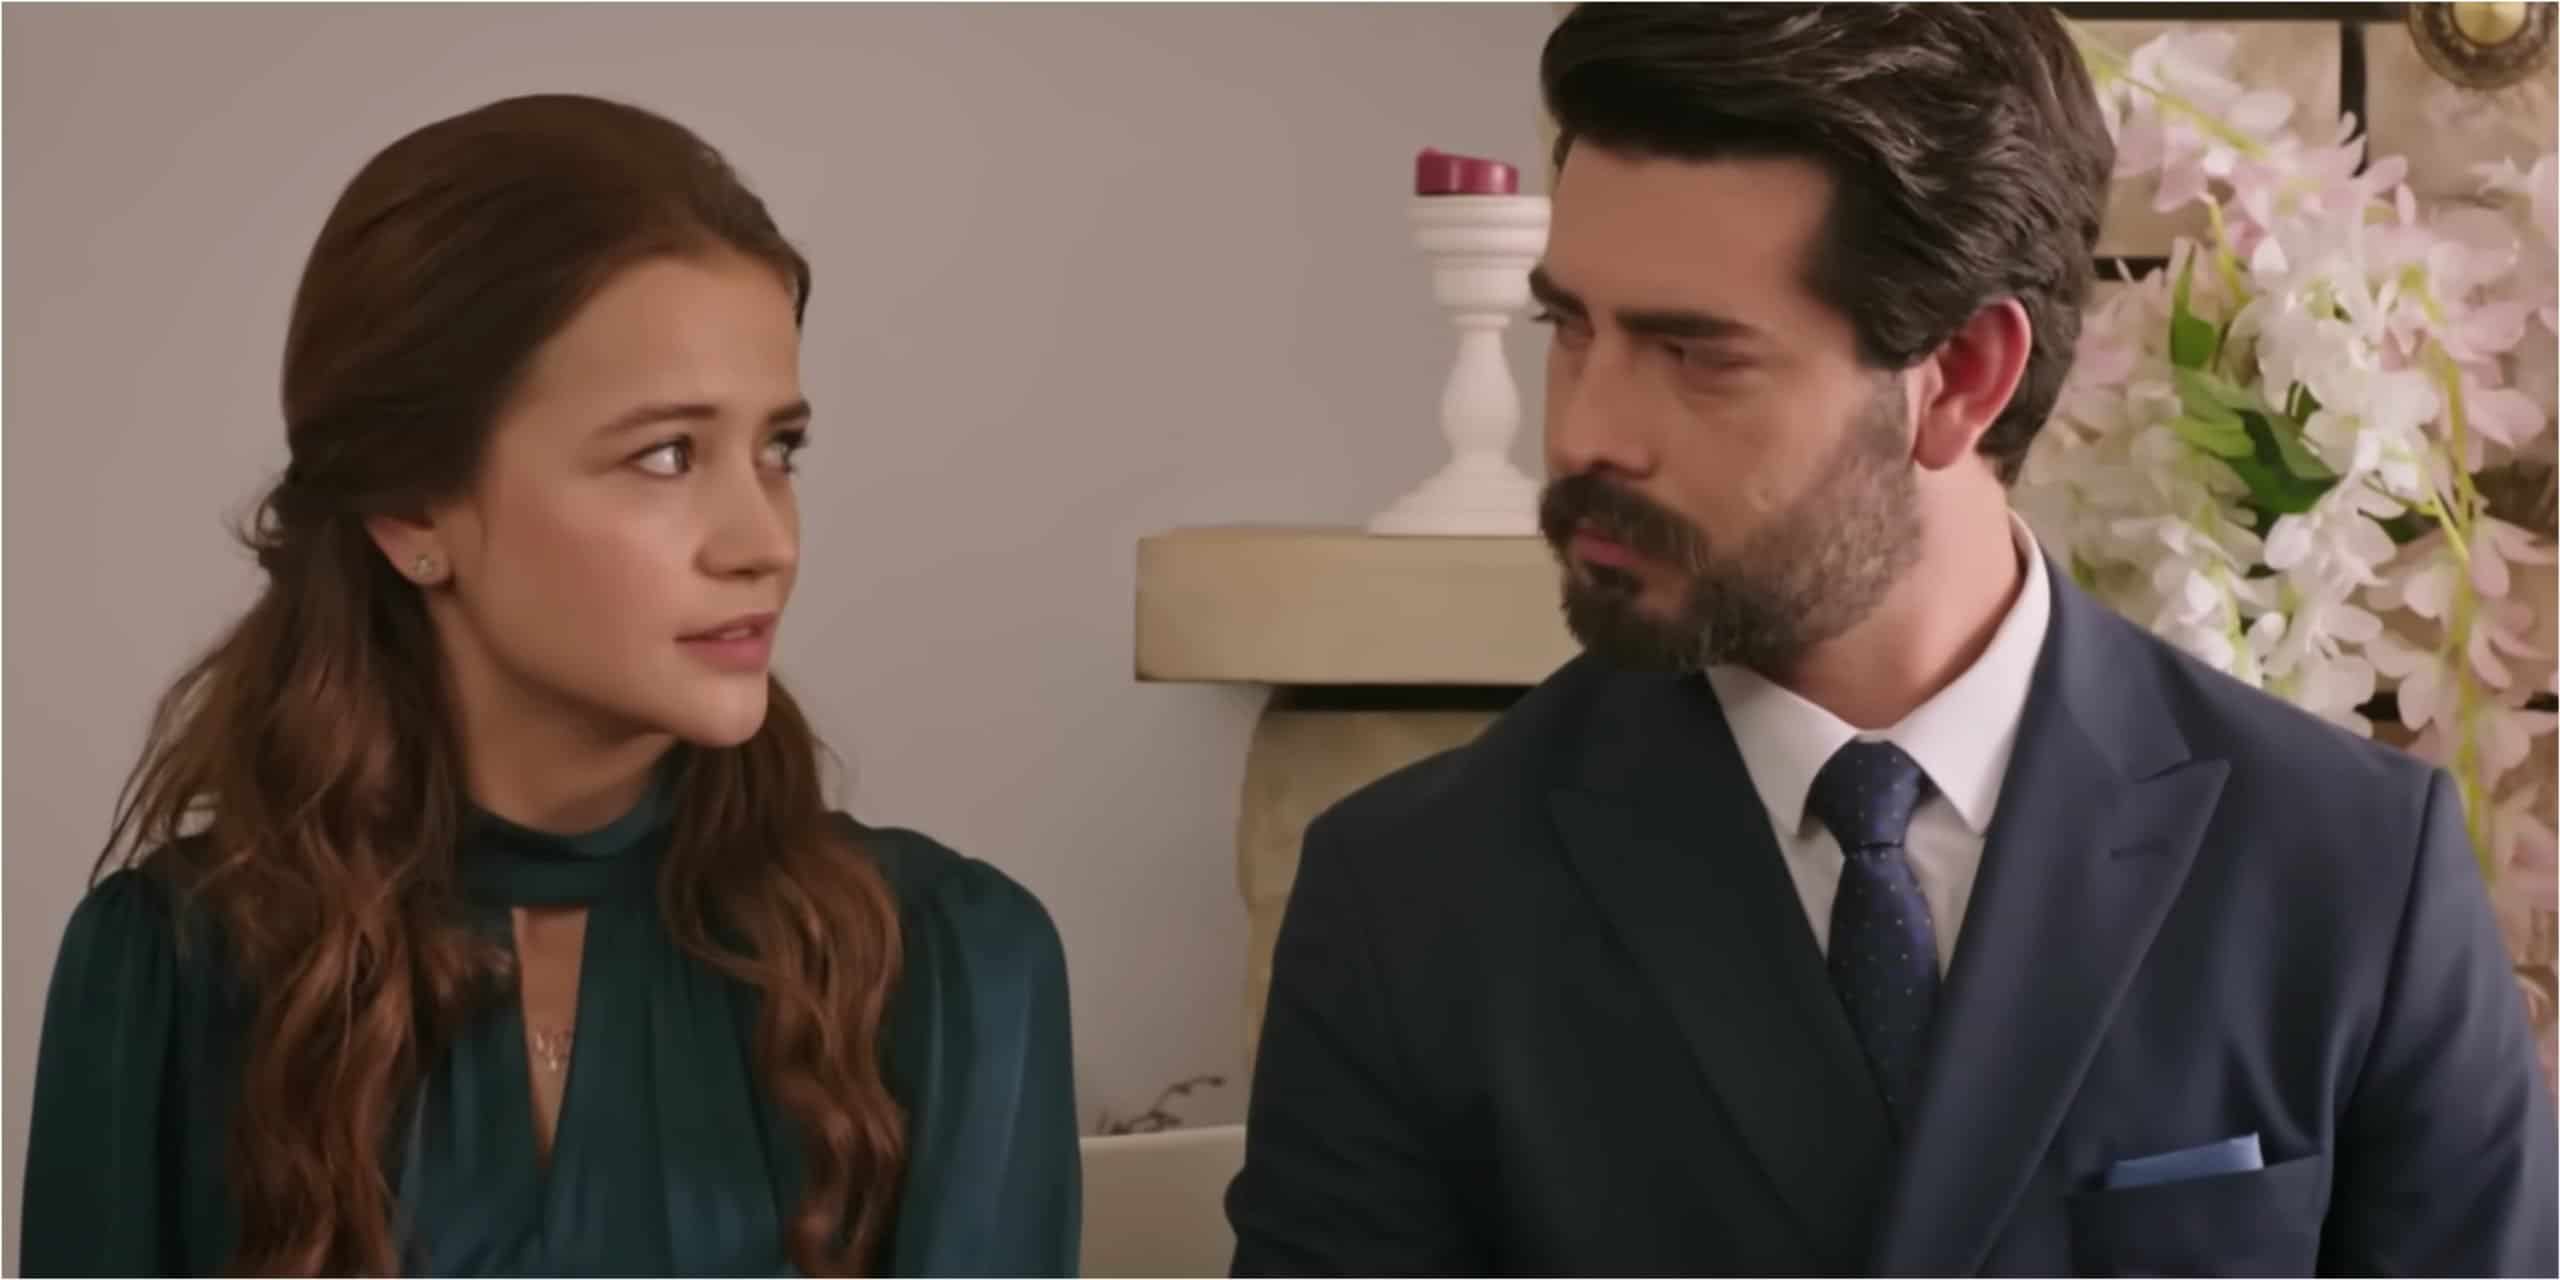 Turkish Romance Drama Kan Çiçekleri Episode 144 Synopsis